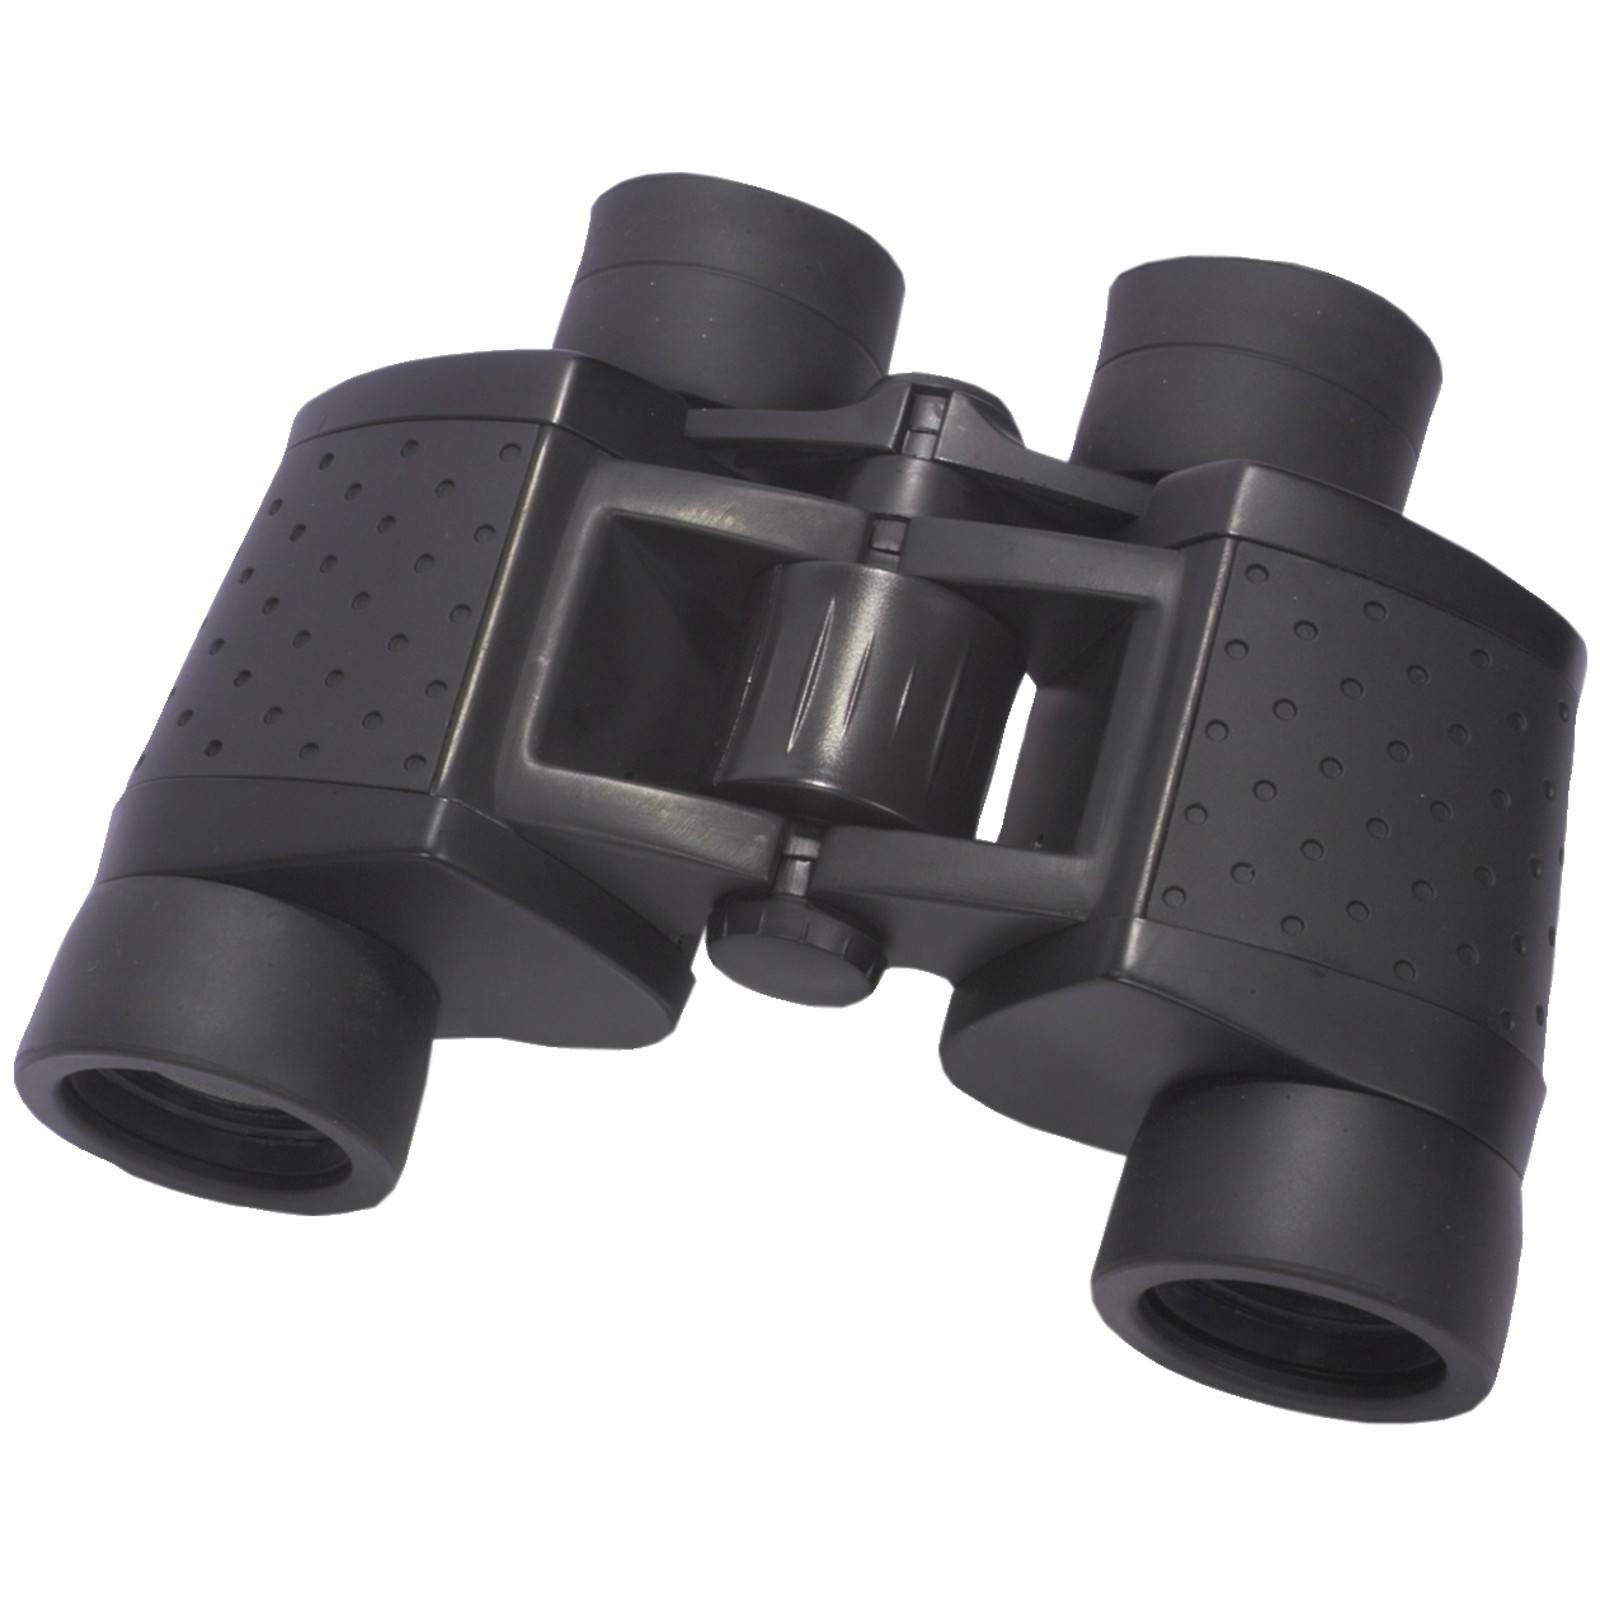 Bilora Bilgon Eagle 7x50 Binocular (9307) dalekozor dvogled